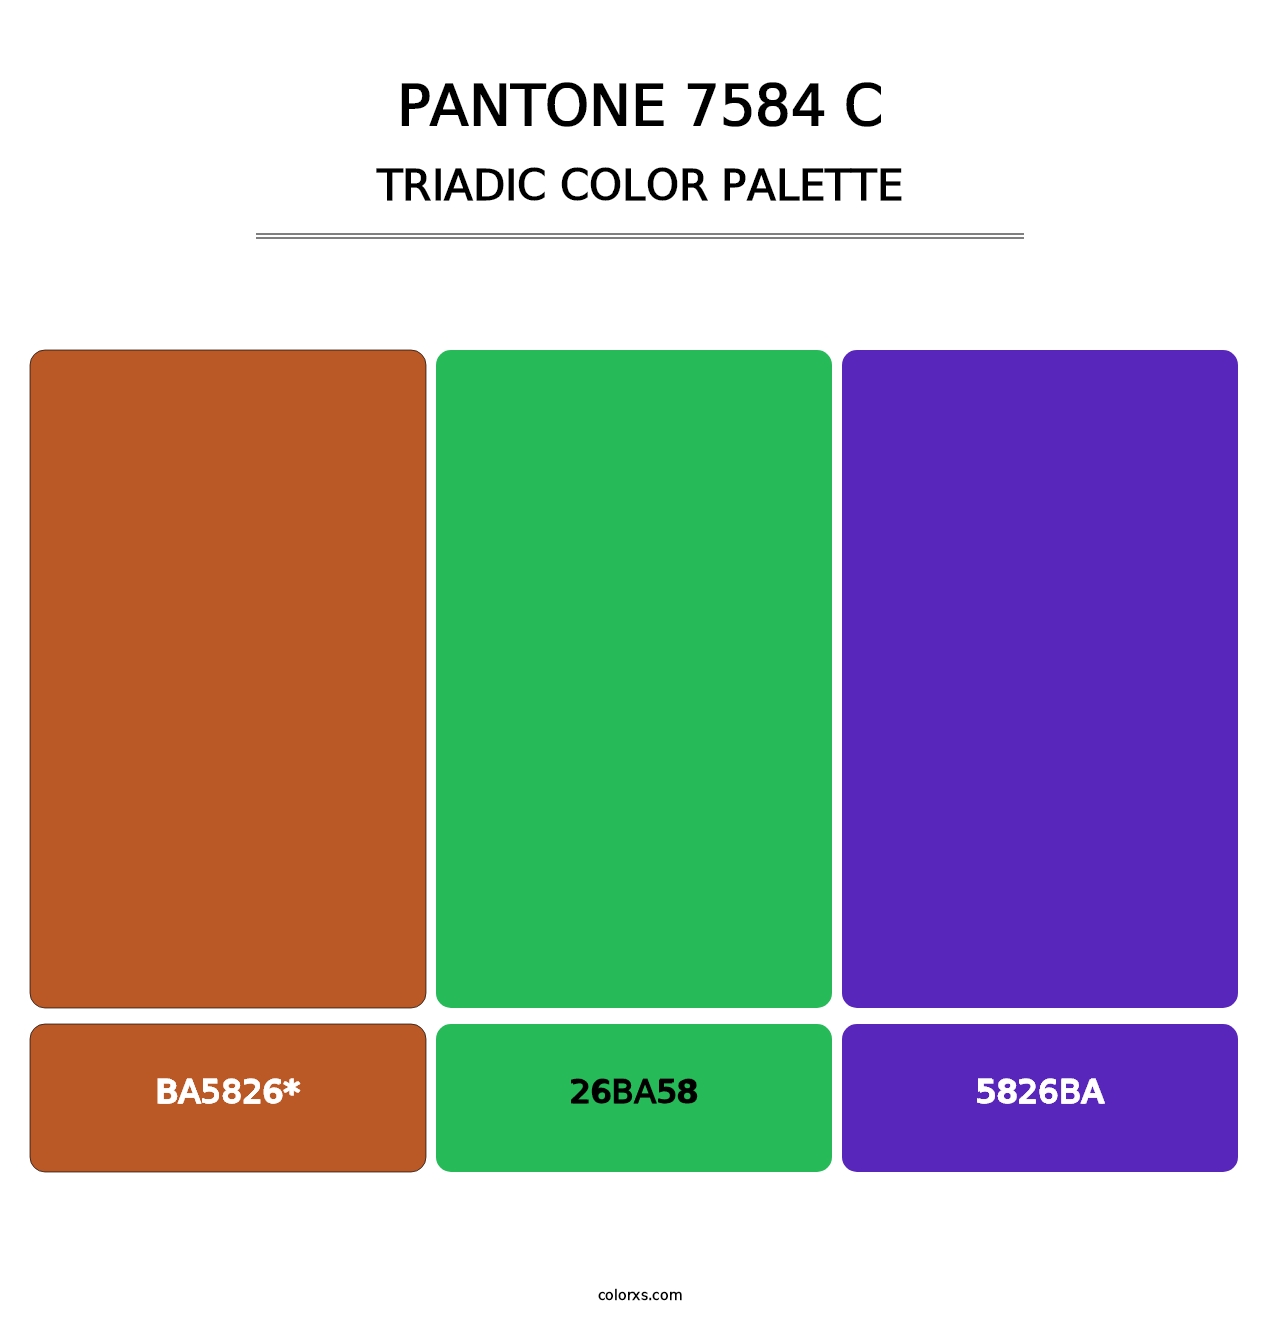 PANTONE 7584 C - Triadic Color Palette